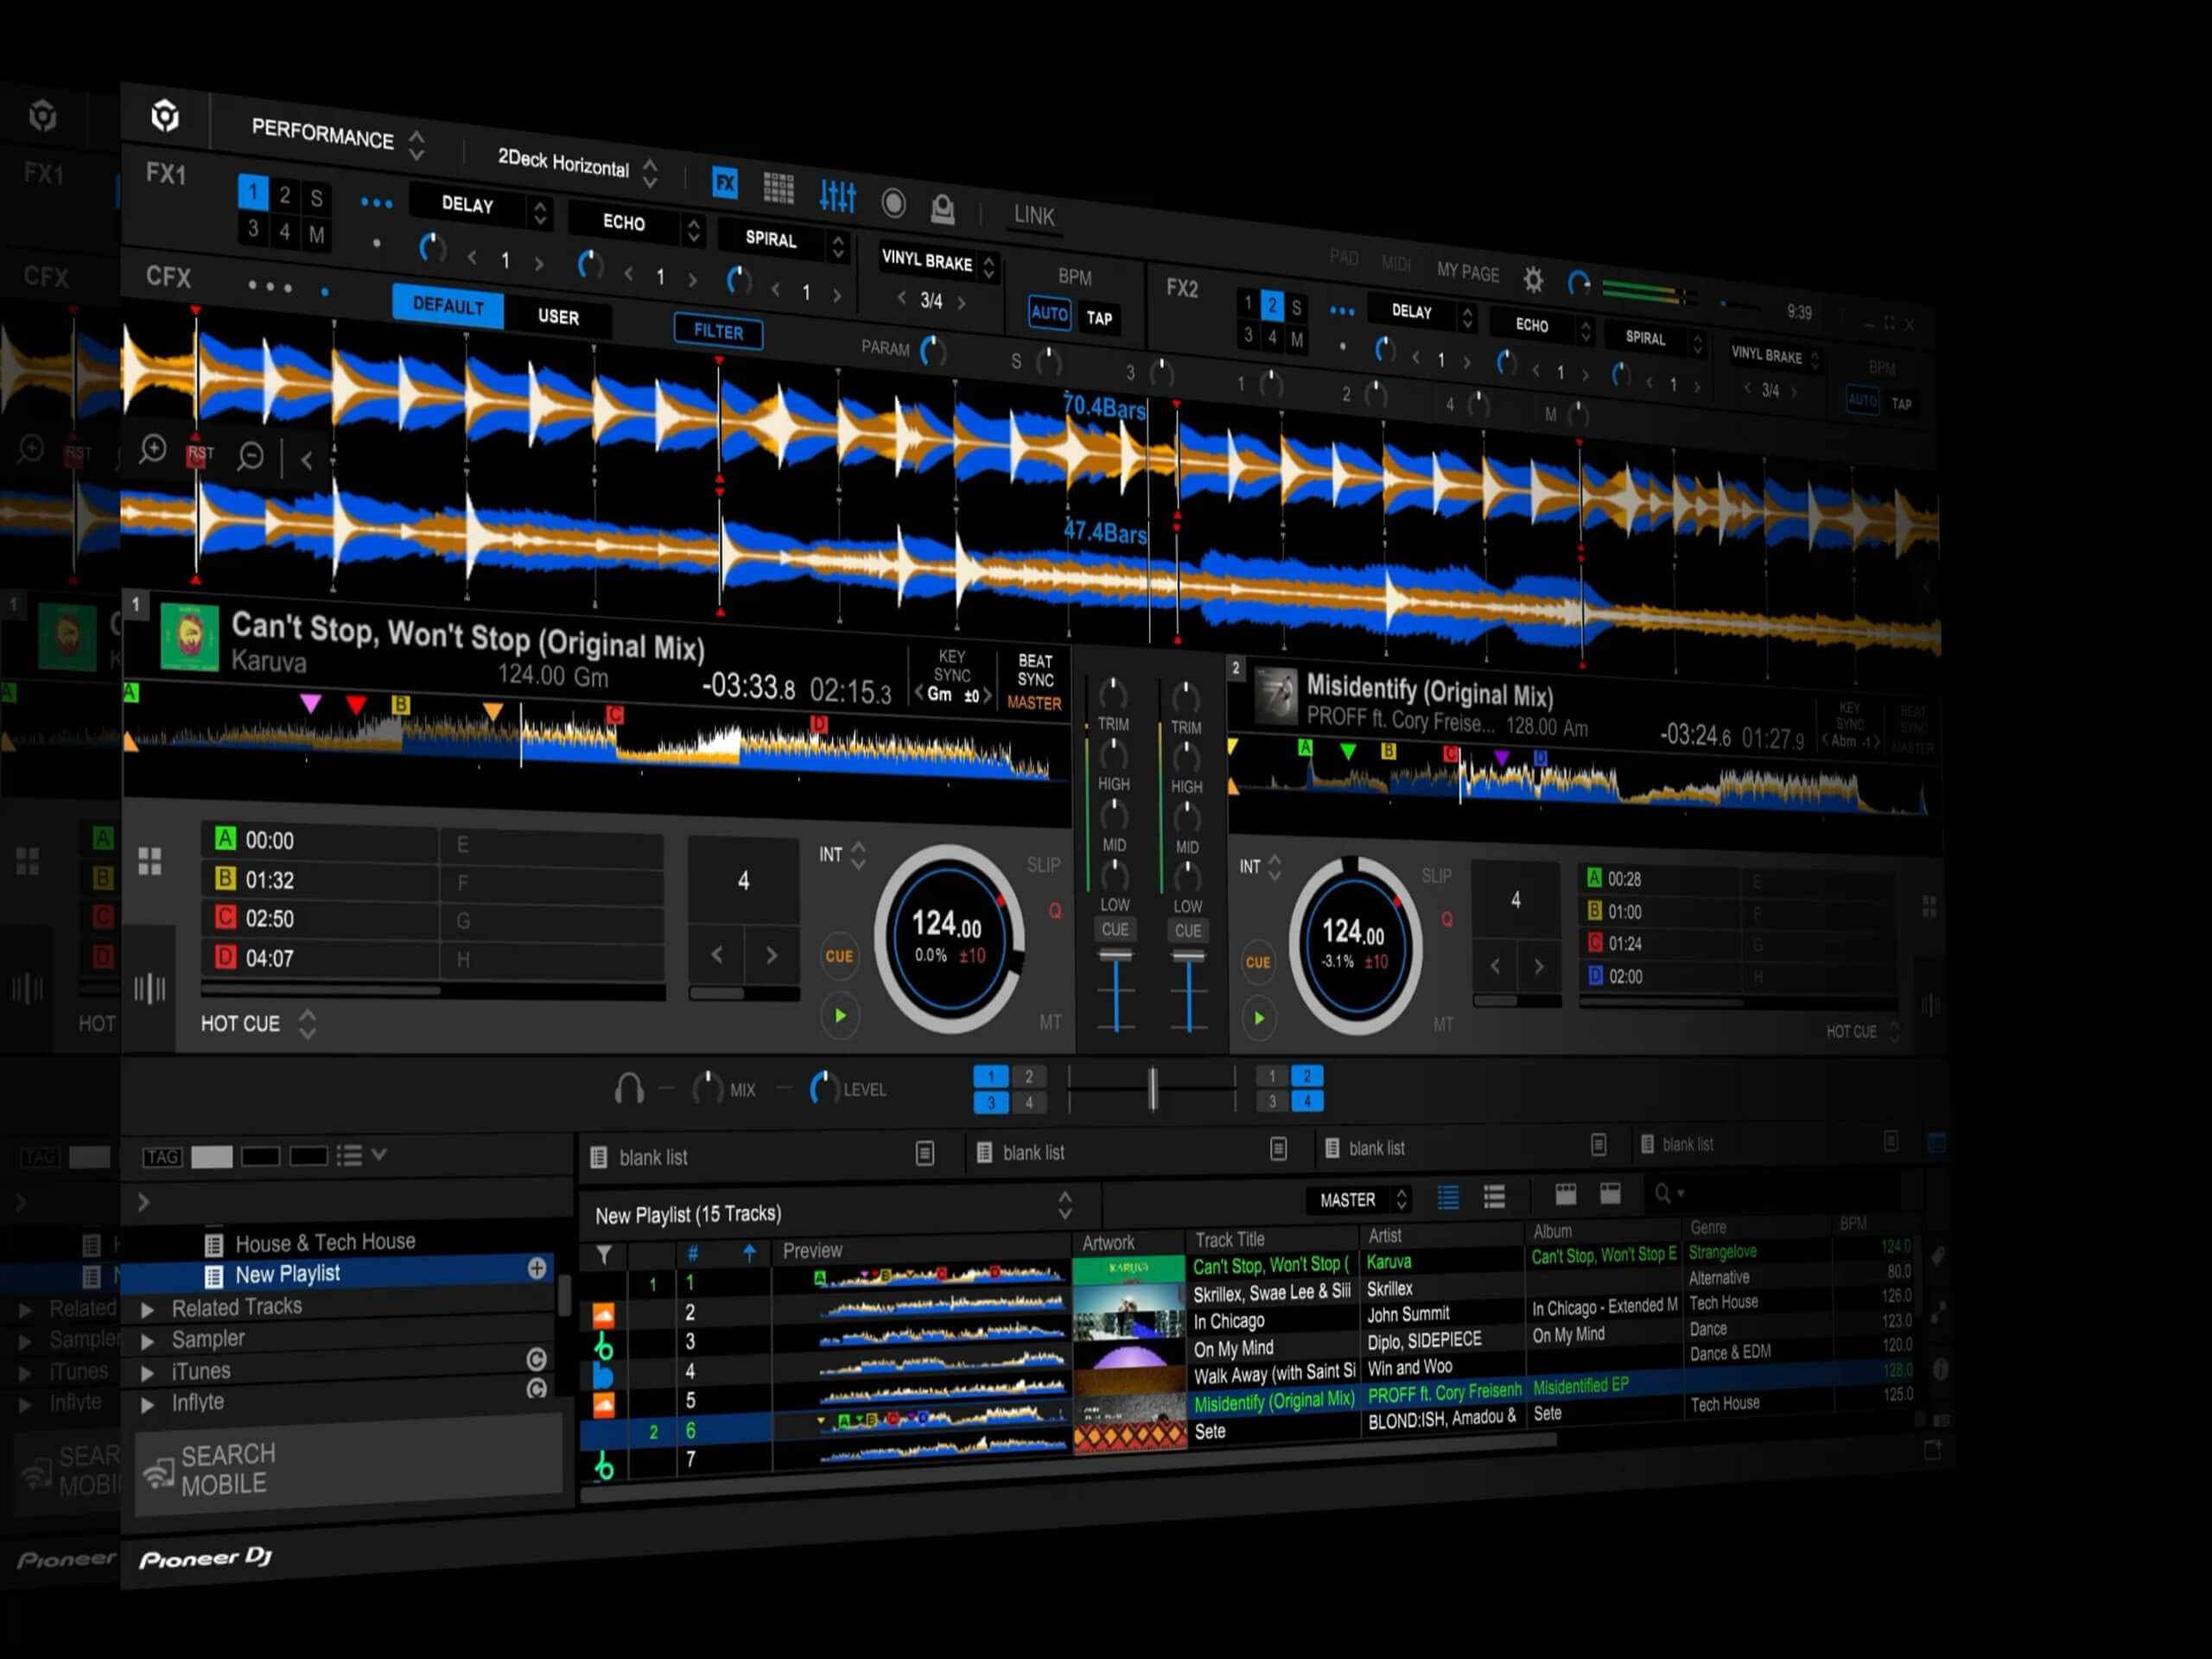 instal the last version for ipod Pioneer DJ rekordbox 6.7.4